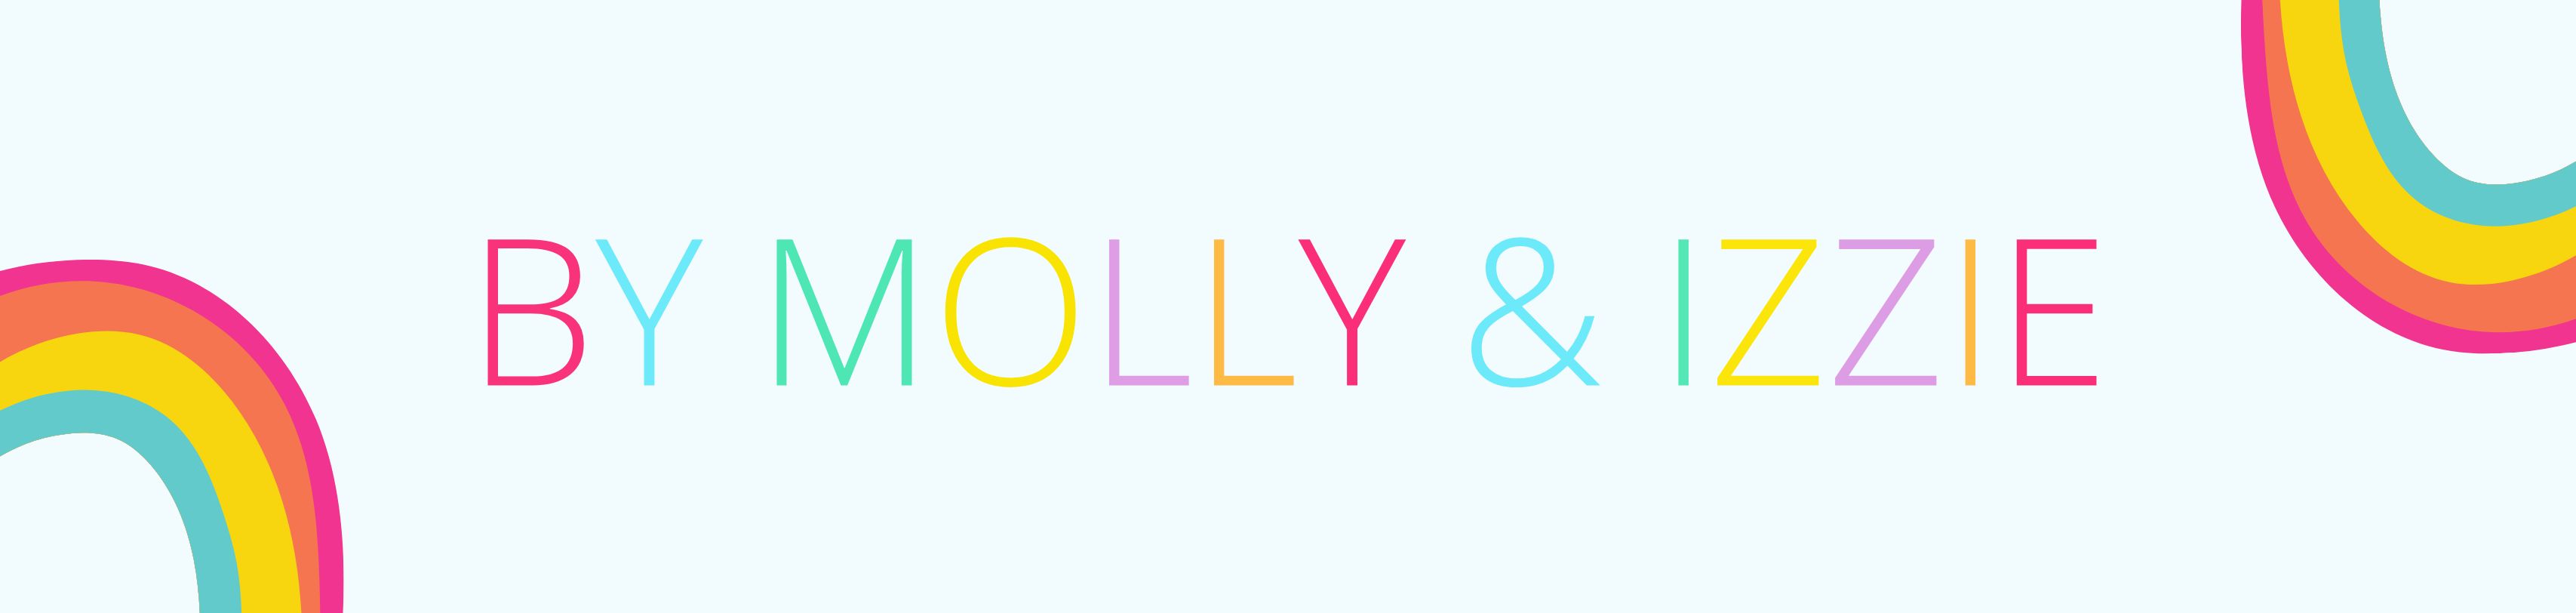 Molly & Izzie